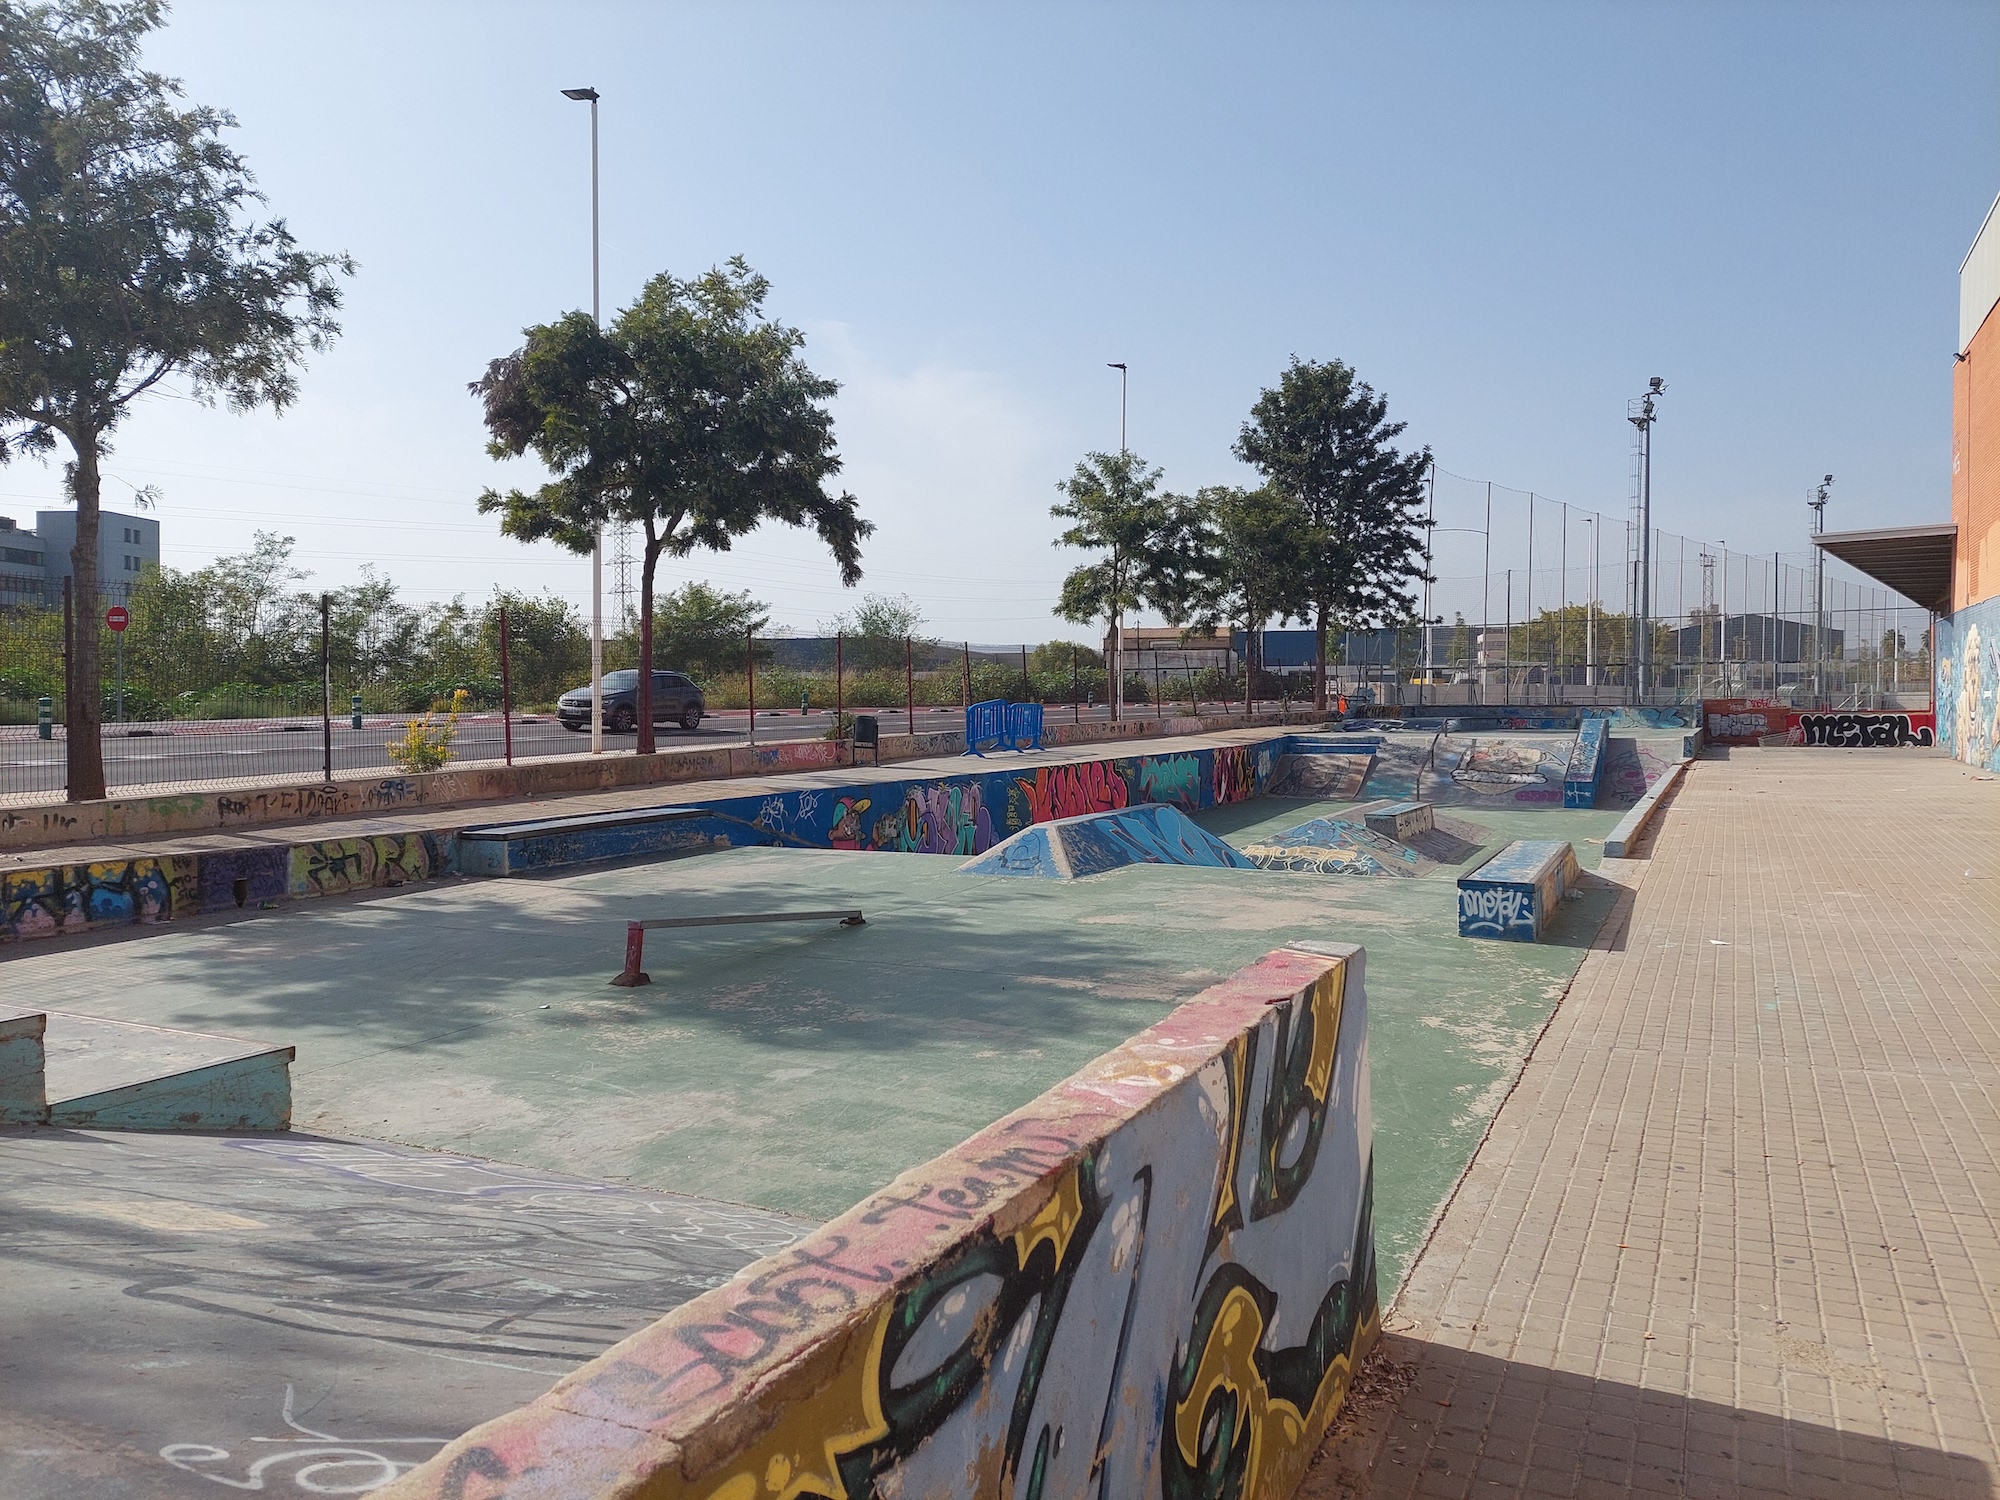 Puerto de Sagunto skatepark